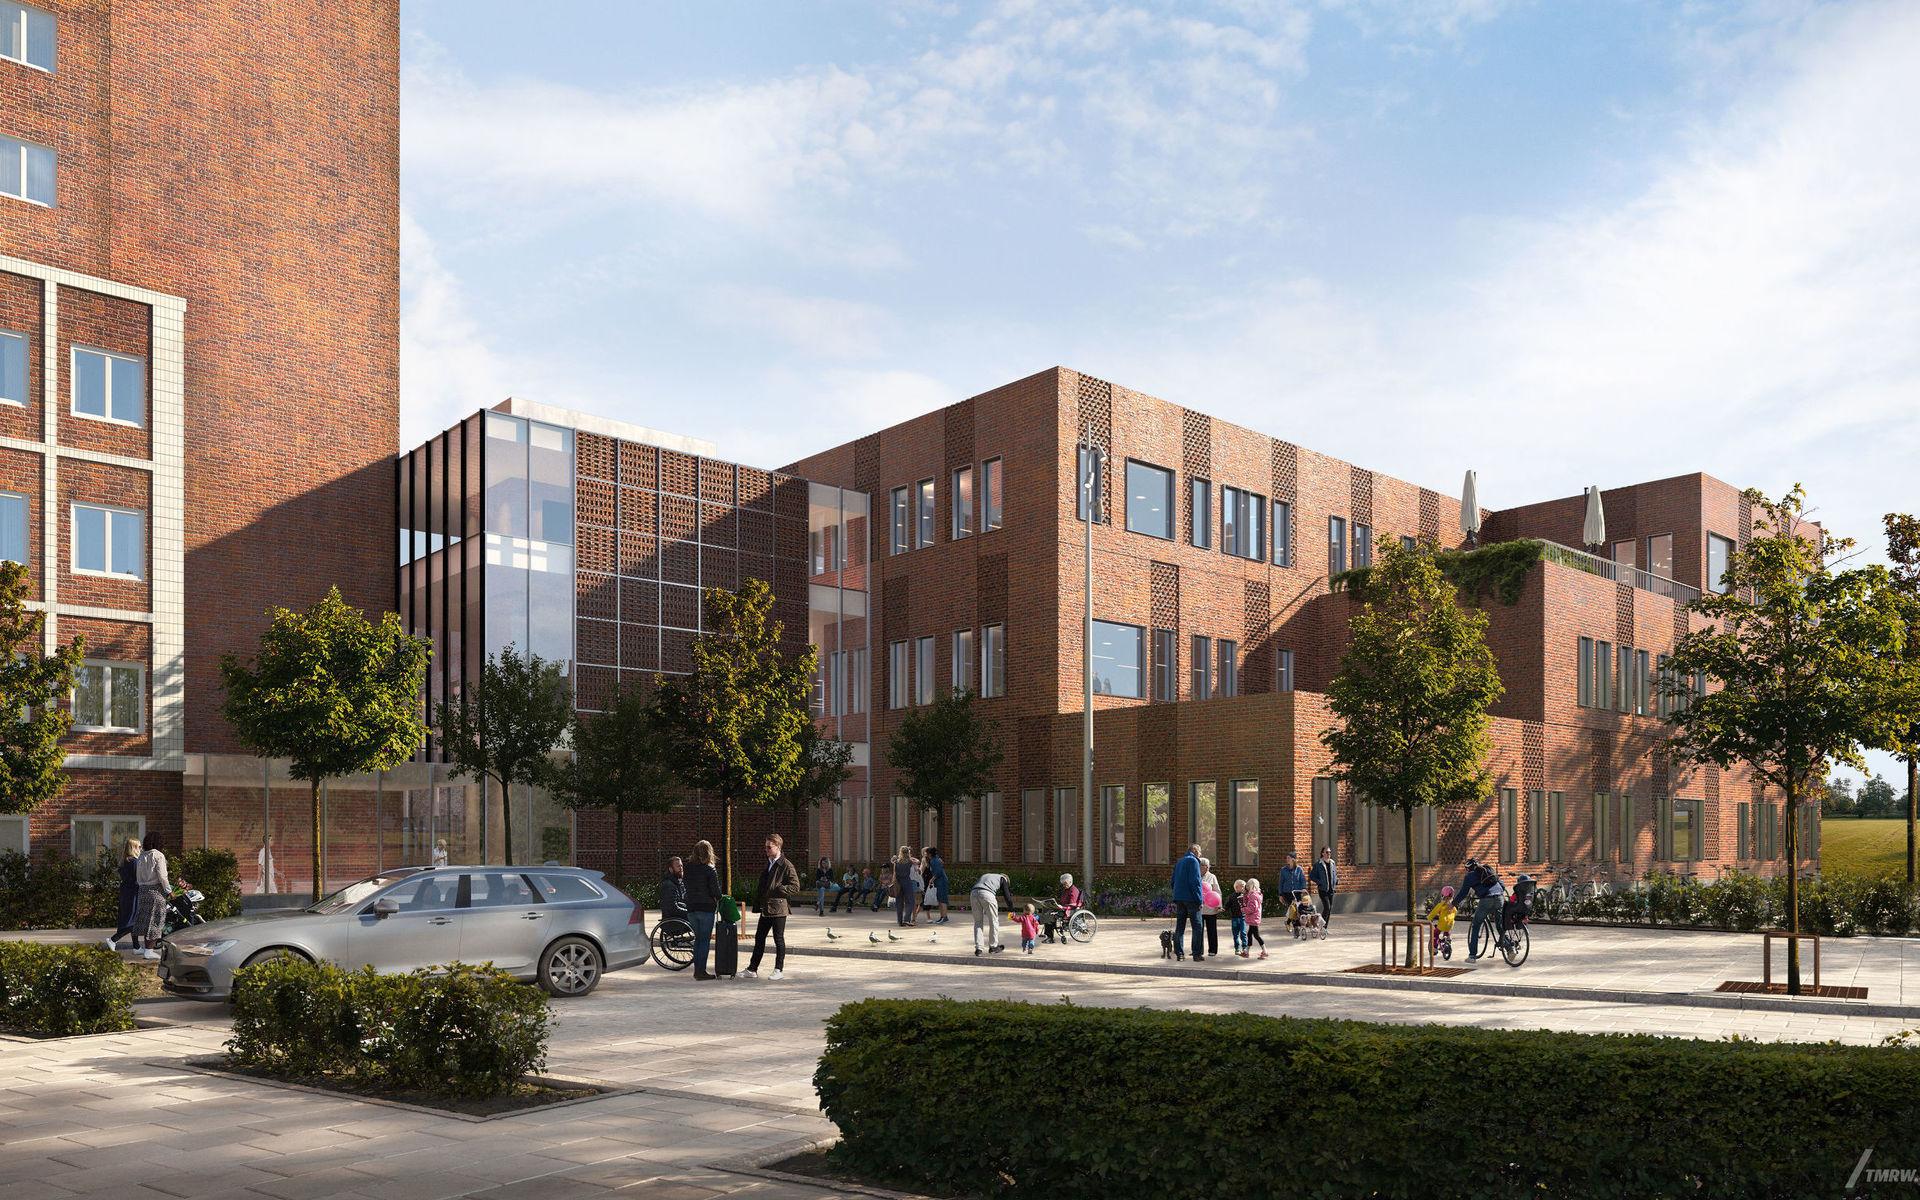 Så här kommer det nya Operationscentrum Uddevalla sjukhus att se ut enligt arkitektskissen.